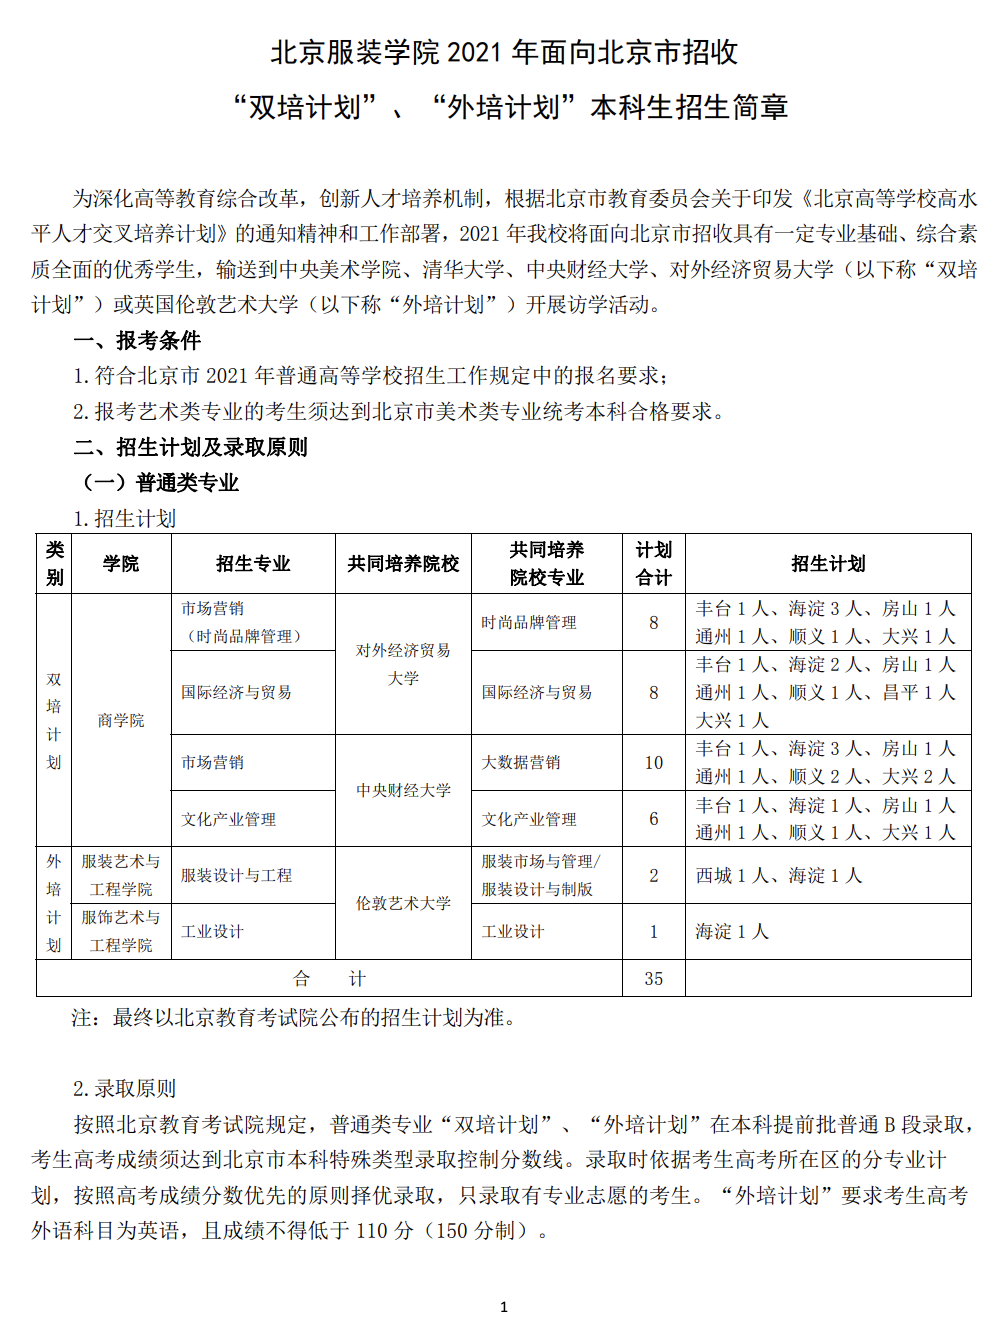 北京服装学院面向北京市招收双培外培计划招生简章发布